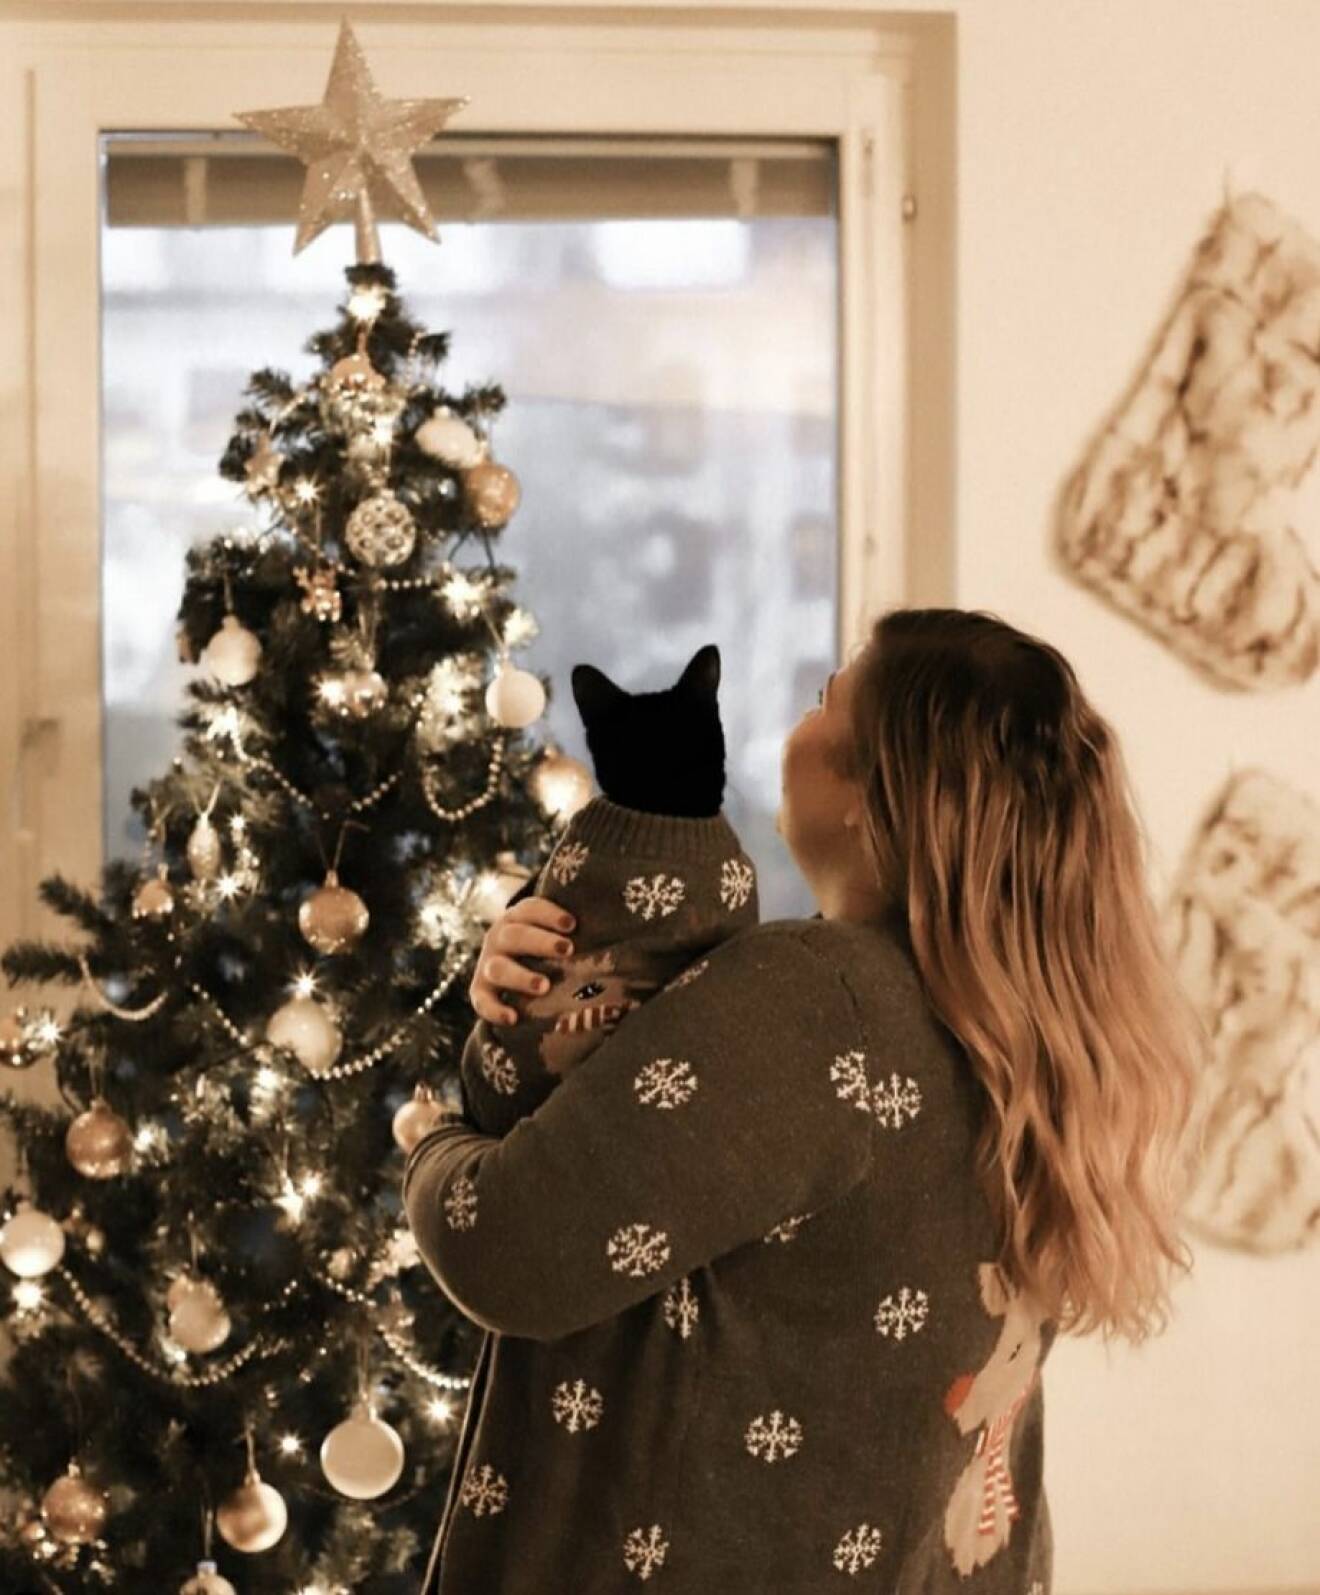 Linda-Marie Nilsson håller i en katt och tittar på sin julgran